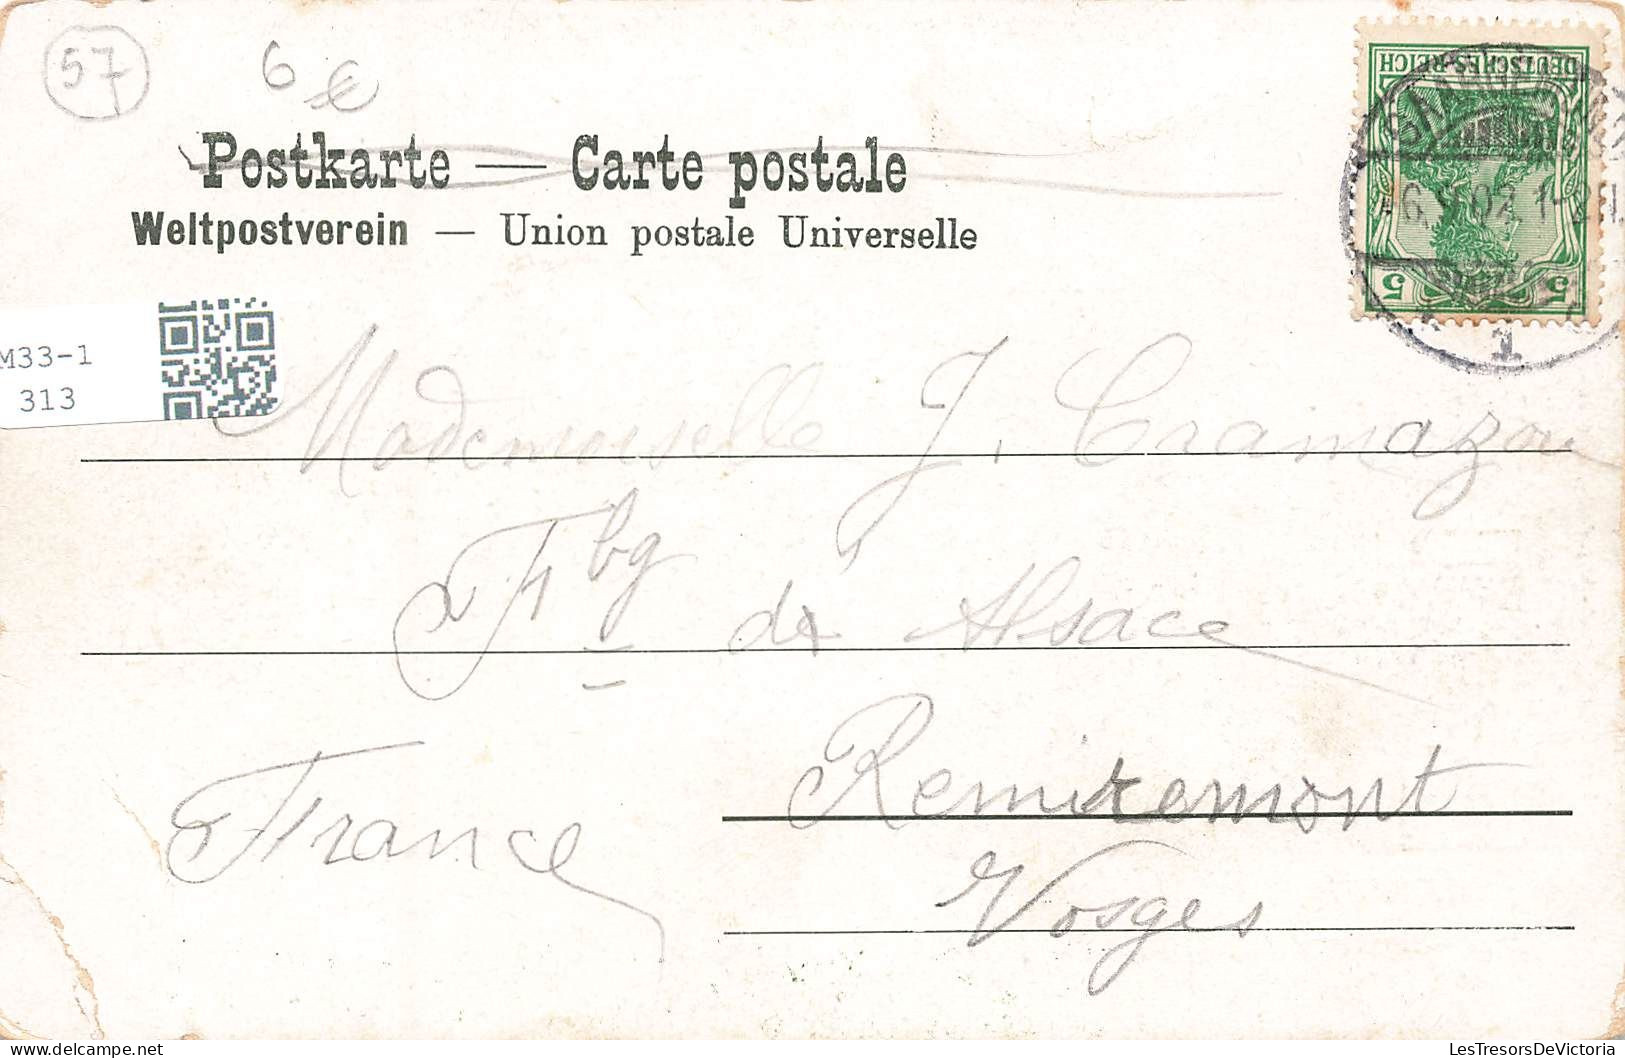 FRANCE - Souvenir De Sarreguemines - Animé - Colorisé - Dos Non Divisé - Carte Postale Ancienne - Sarreguemines